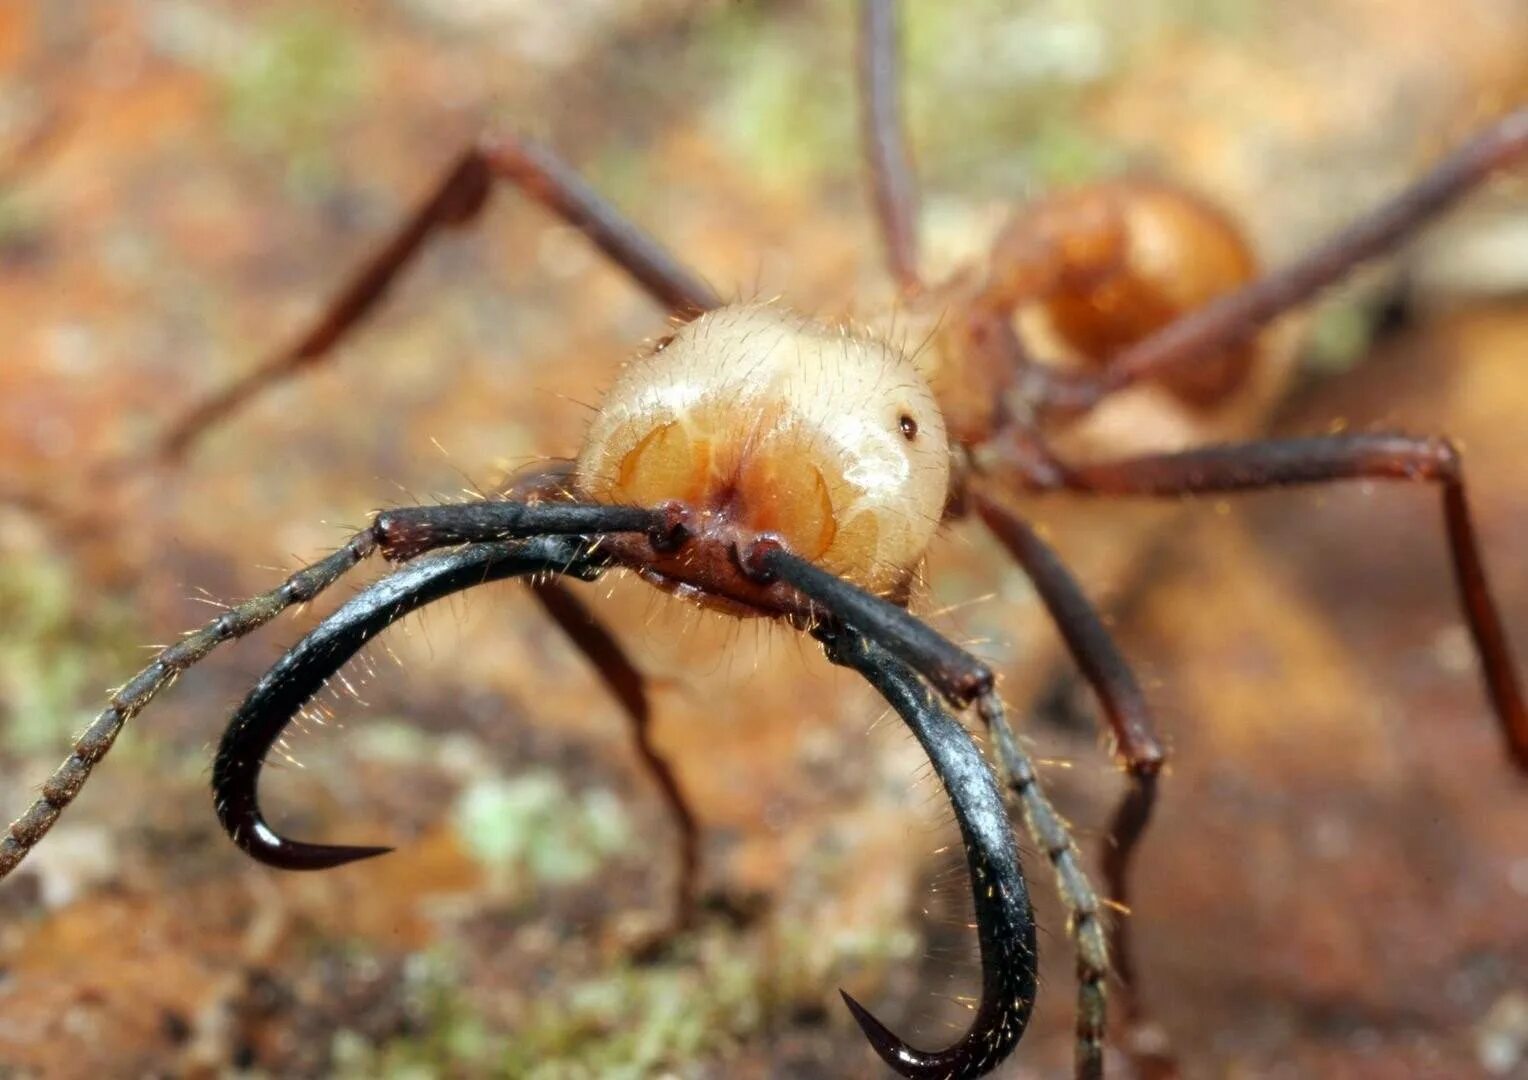 Название армейского муравья. Эцитоны Бурчелли. Кочевой муравей Эцитон Бурчелли. Бродячие муравьи – Эцитоны. Муравьи Бурчелли.